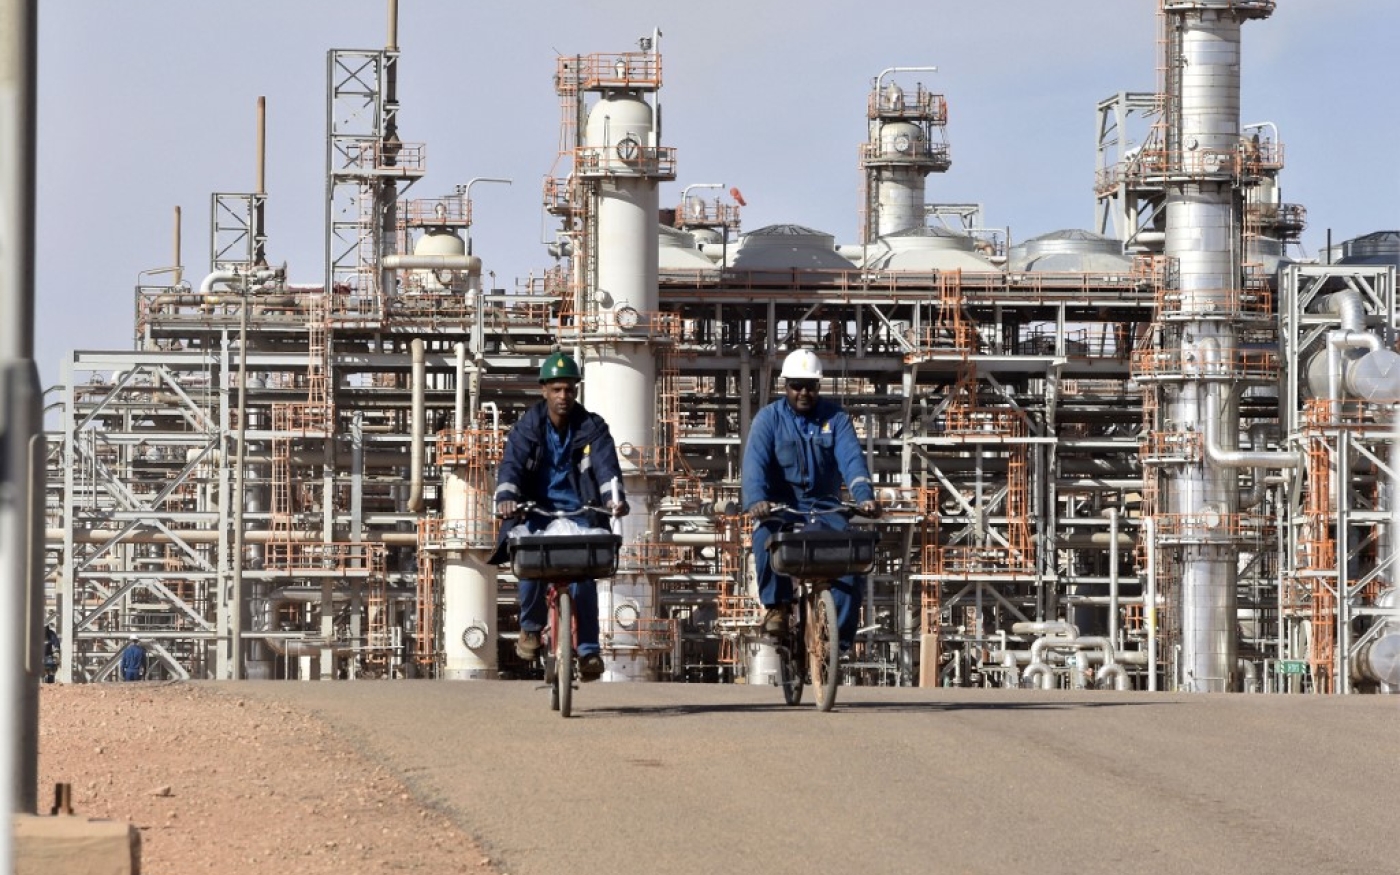 Pour attirer les investisseurs étrangers dans le secteur pétrolier, l’État algérien a simplifié la réglementation et concédé d’importantes incitations fiscales (AFP/Ryad Kramdi)